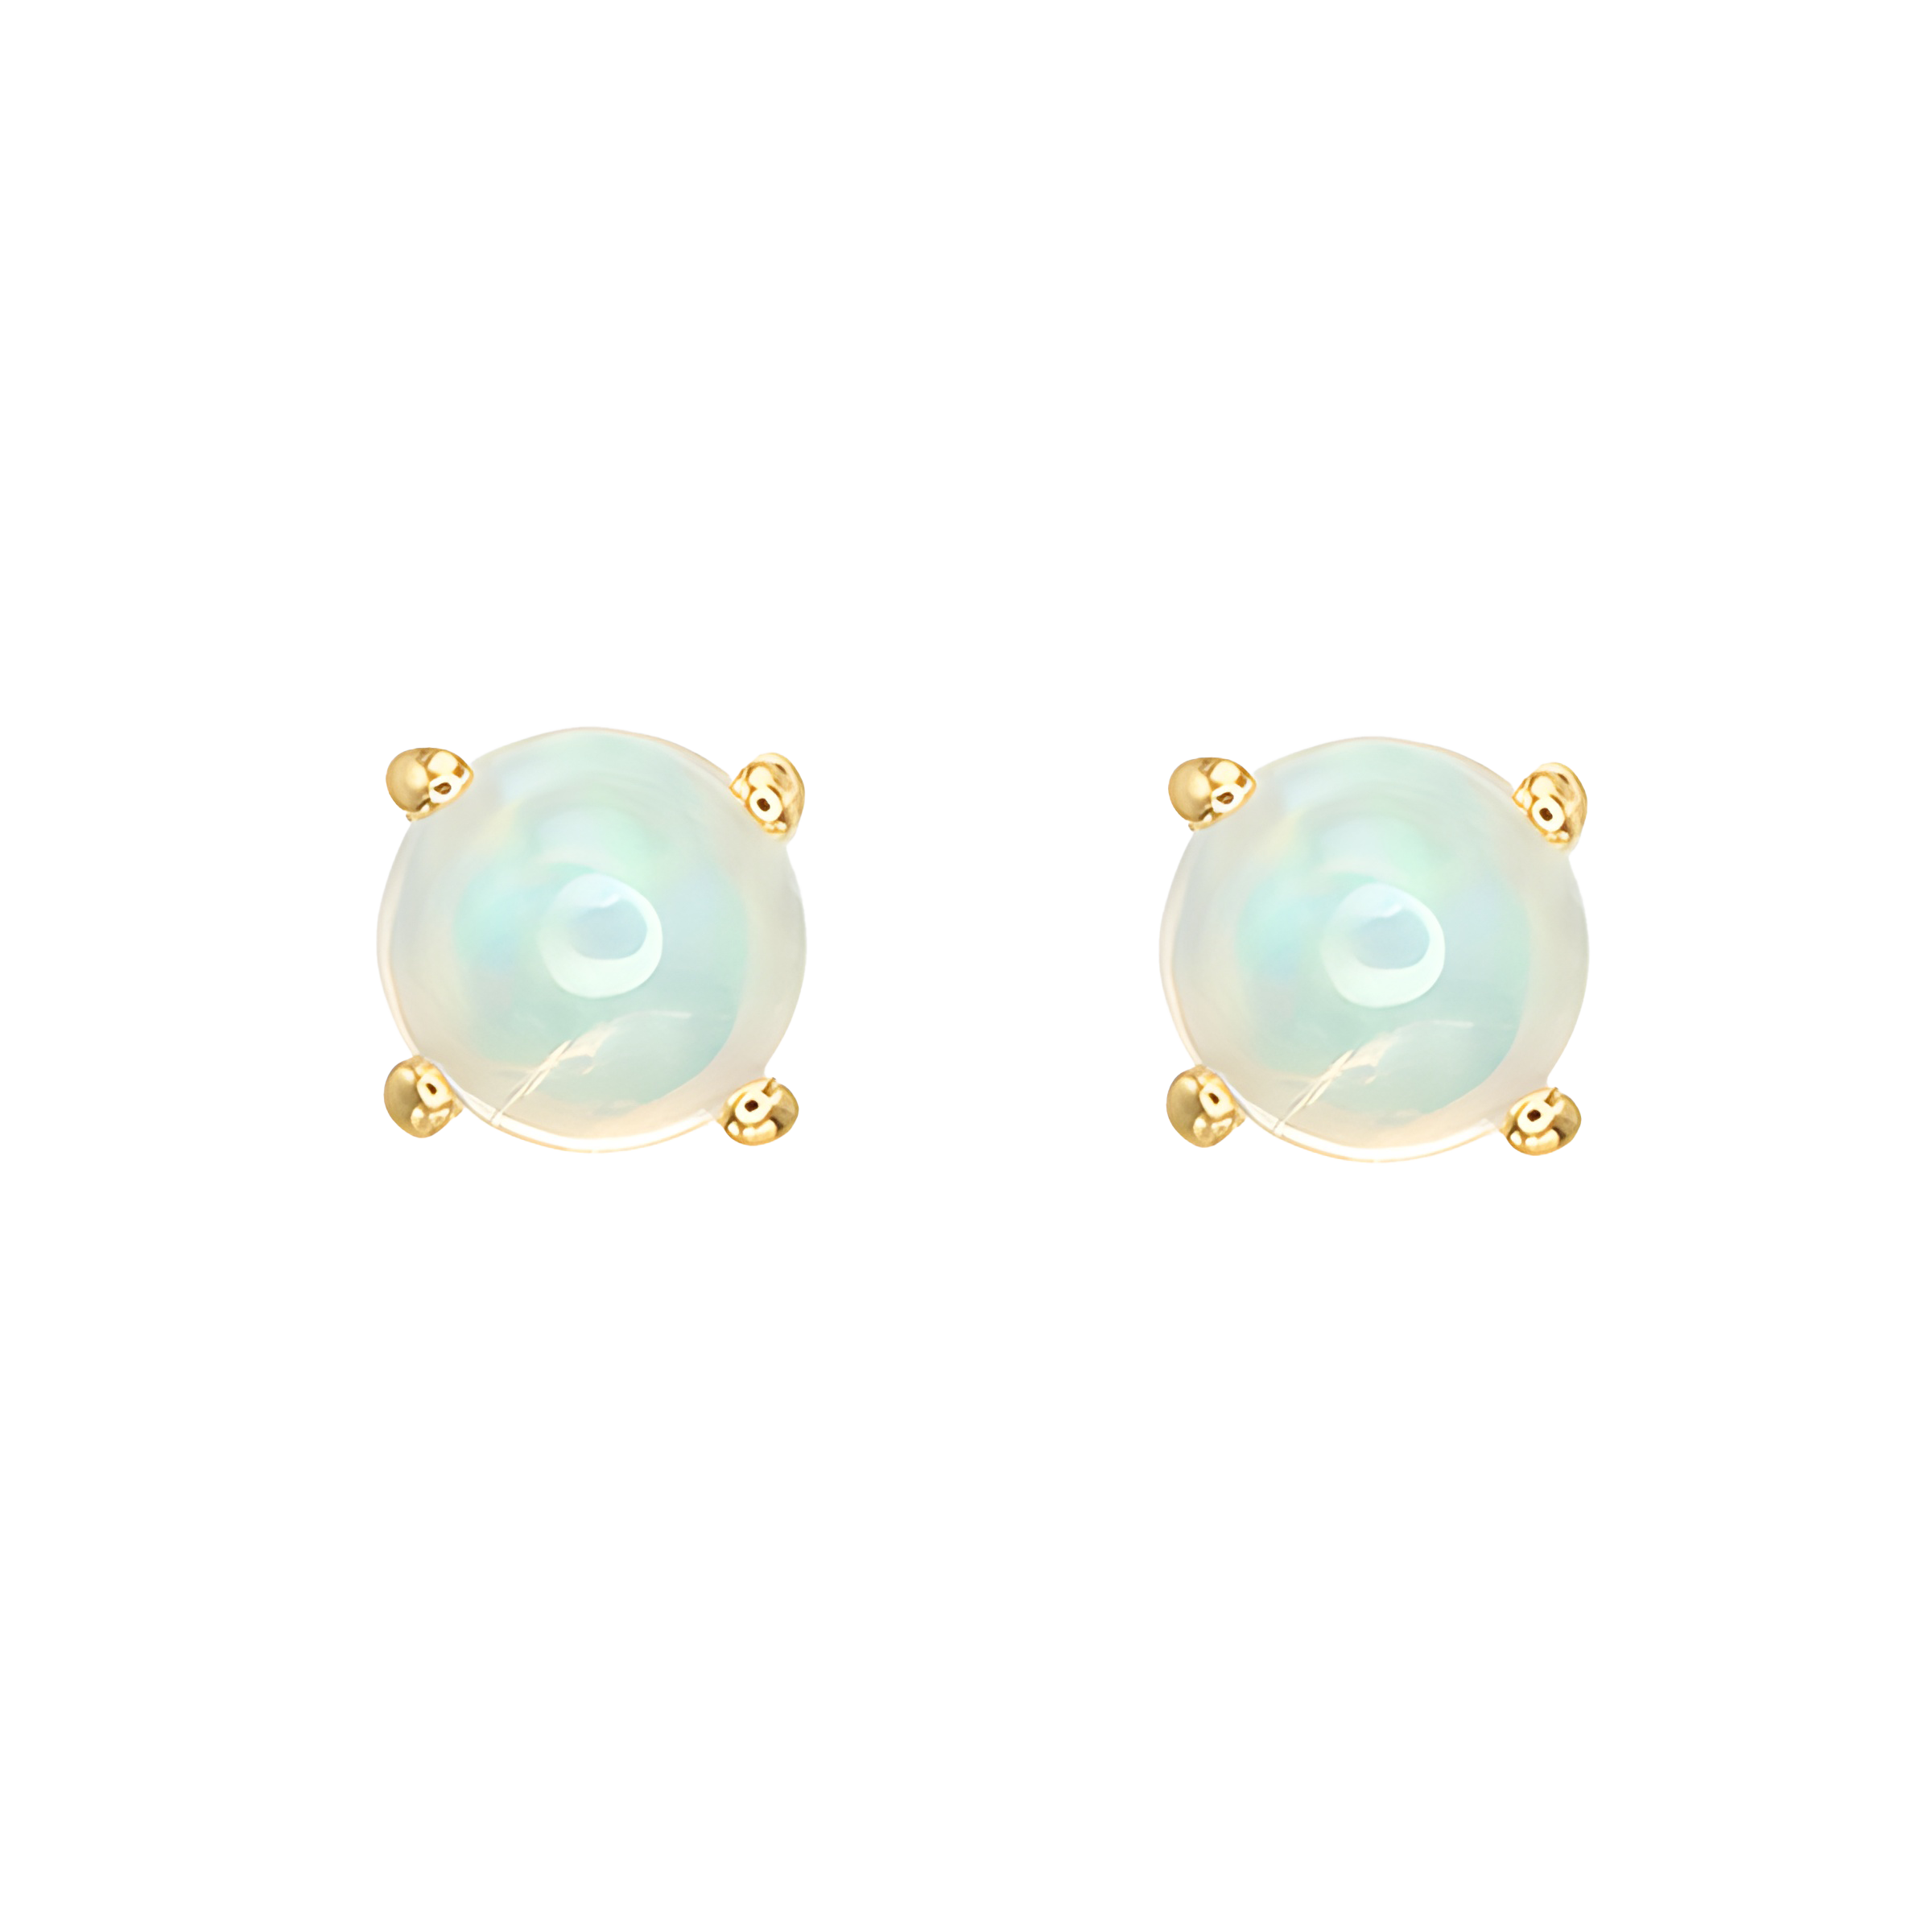 Opal Stud Earrings in 18k Yellow Gold